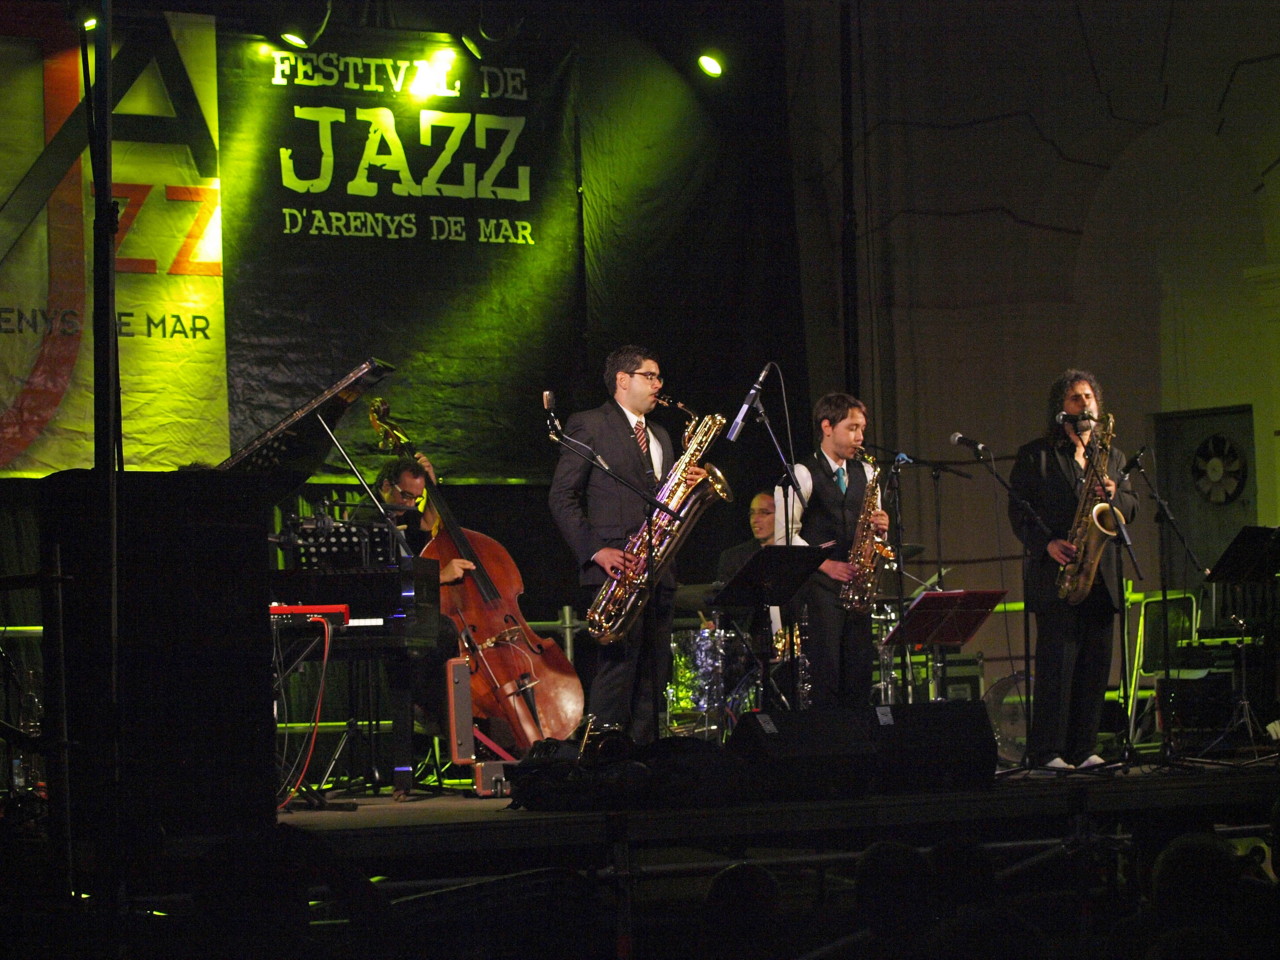 Imatges del 22è Festival de Jazz d'Arenys de Mar - 2013 - Foto 93169037